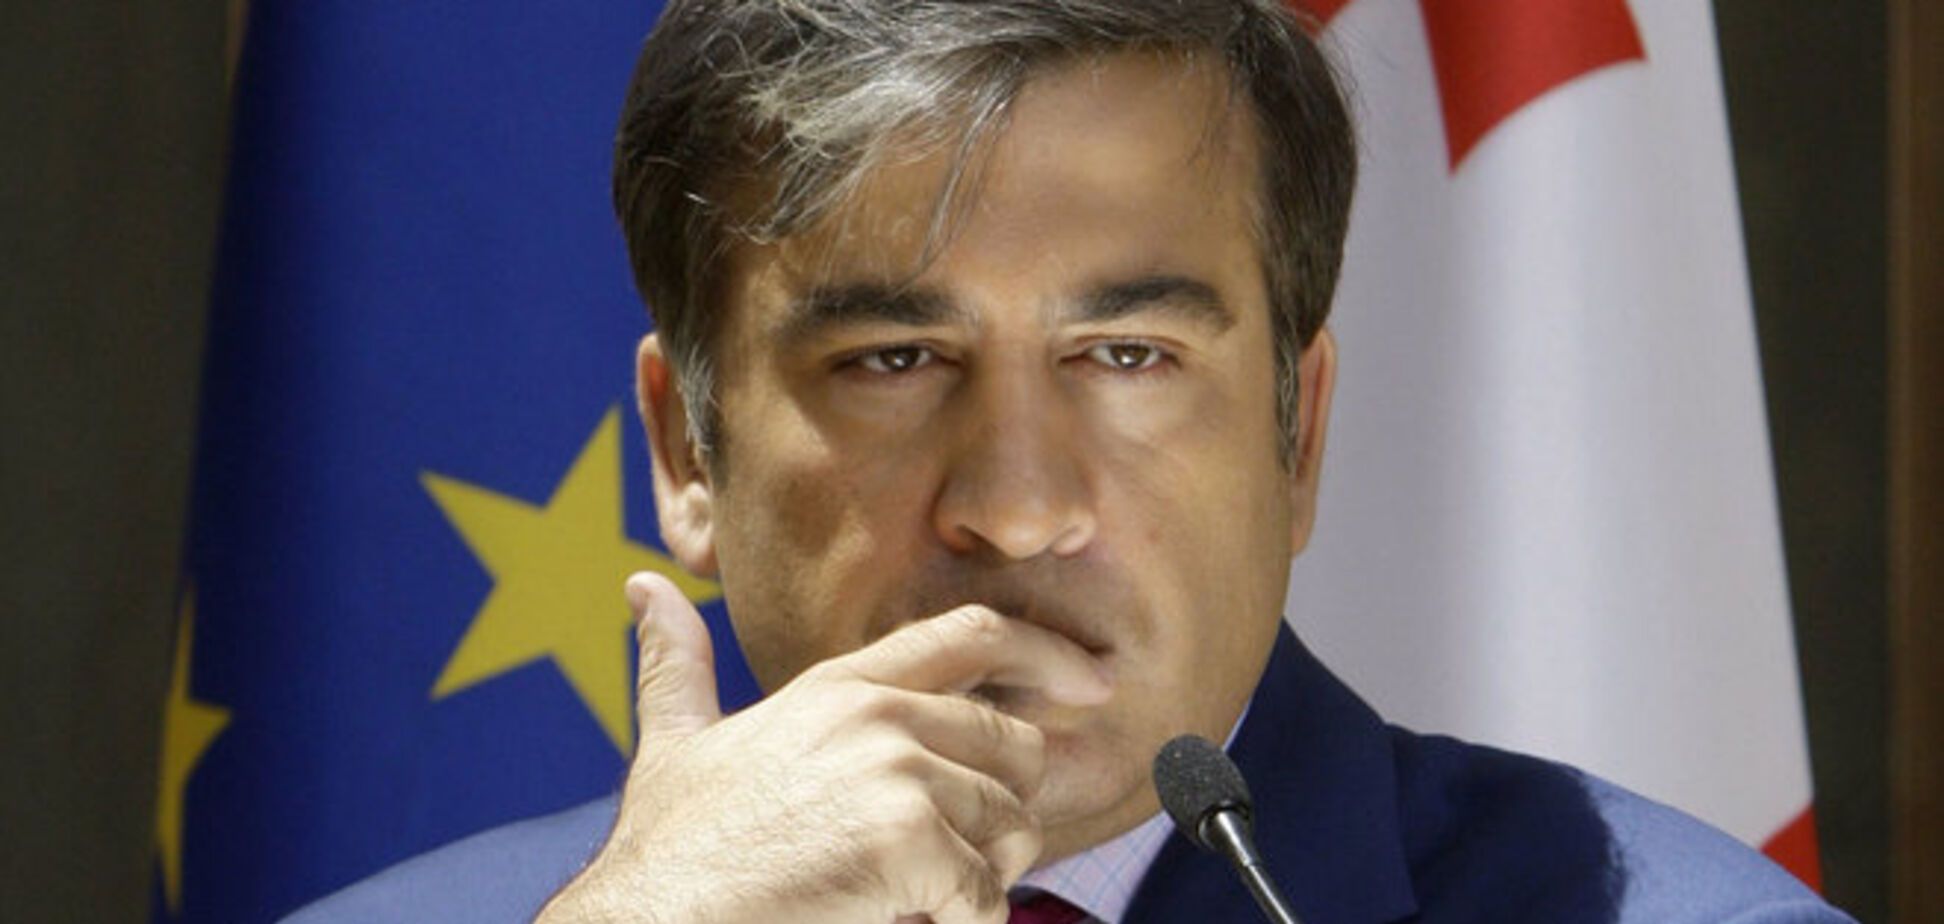 Объявляя перемирие, Путин усилит бандитов для нанесения решающего удара - Саакашвили